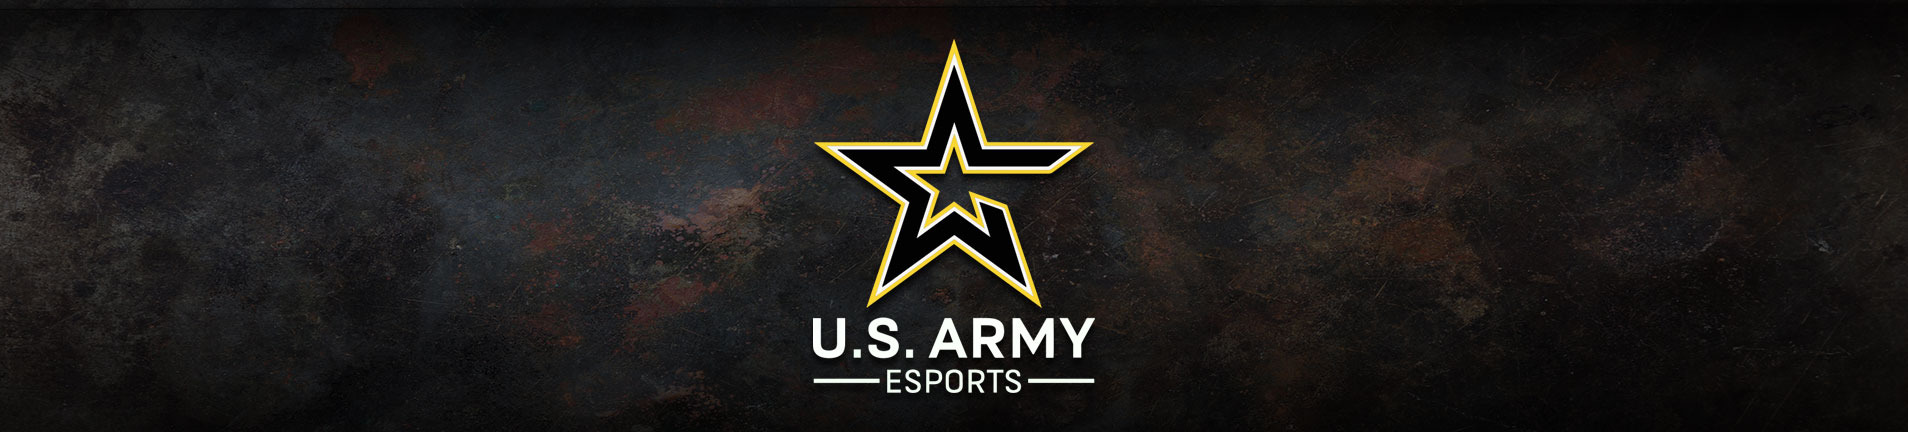 米陸軍がコメント削除問題やリクルート行為の批判を受けtwitchでの活動の一時停止を発表 Game Spark 国内 海外ゲーム情報サイト